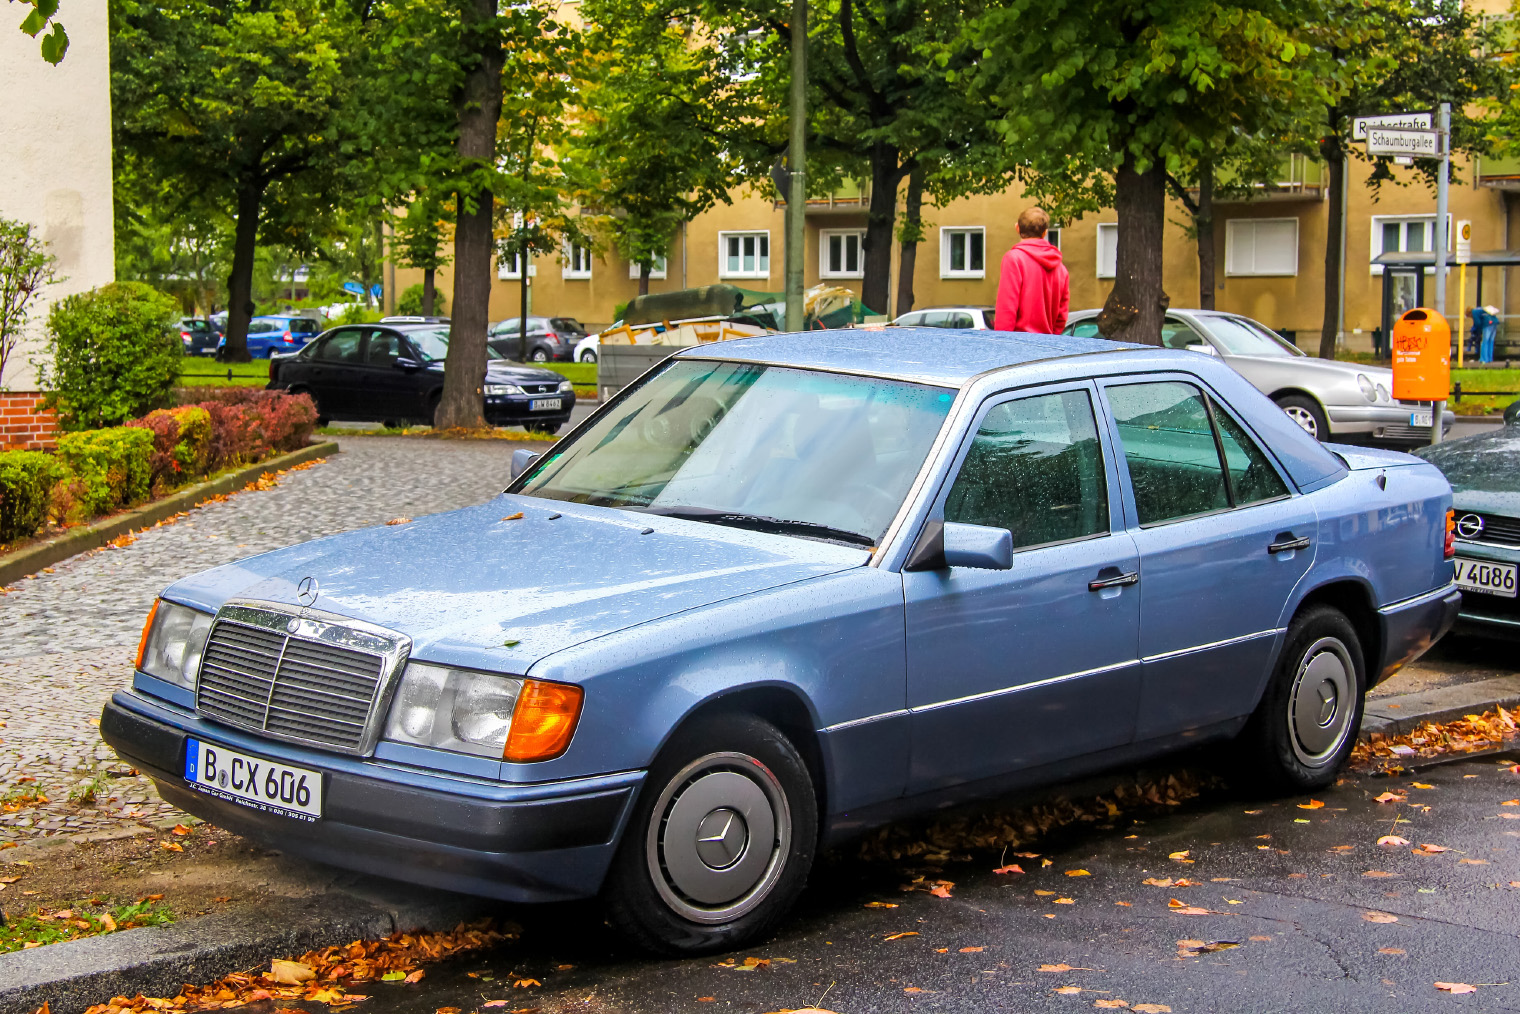 Mercedes с индексом кузова W124 — классический пример седана. Задний диван у него был жестко закреплен и не складывался, но у многих современных седанов это возможно. Источник: Art Konovalov / Shutterstock